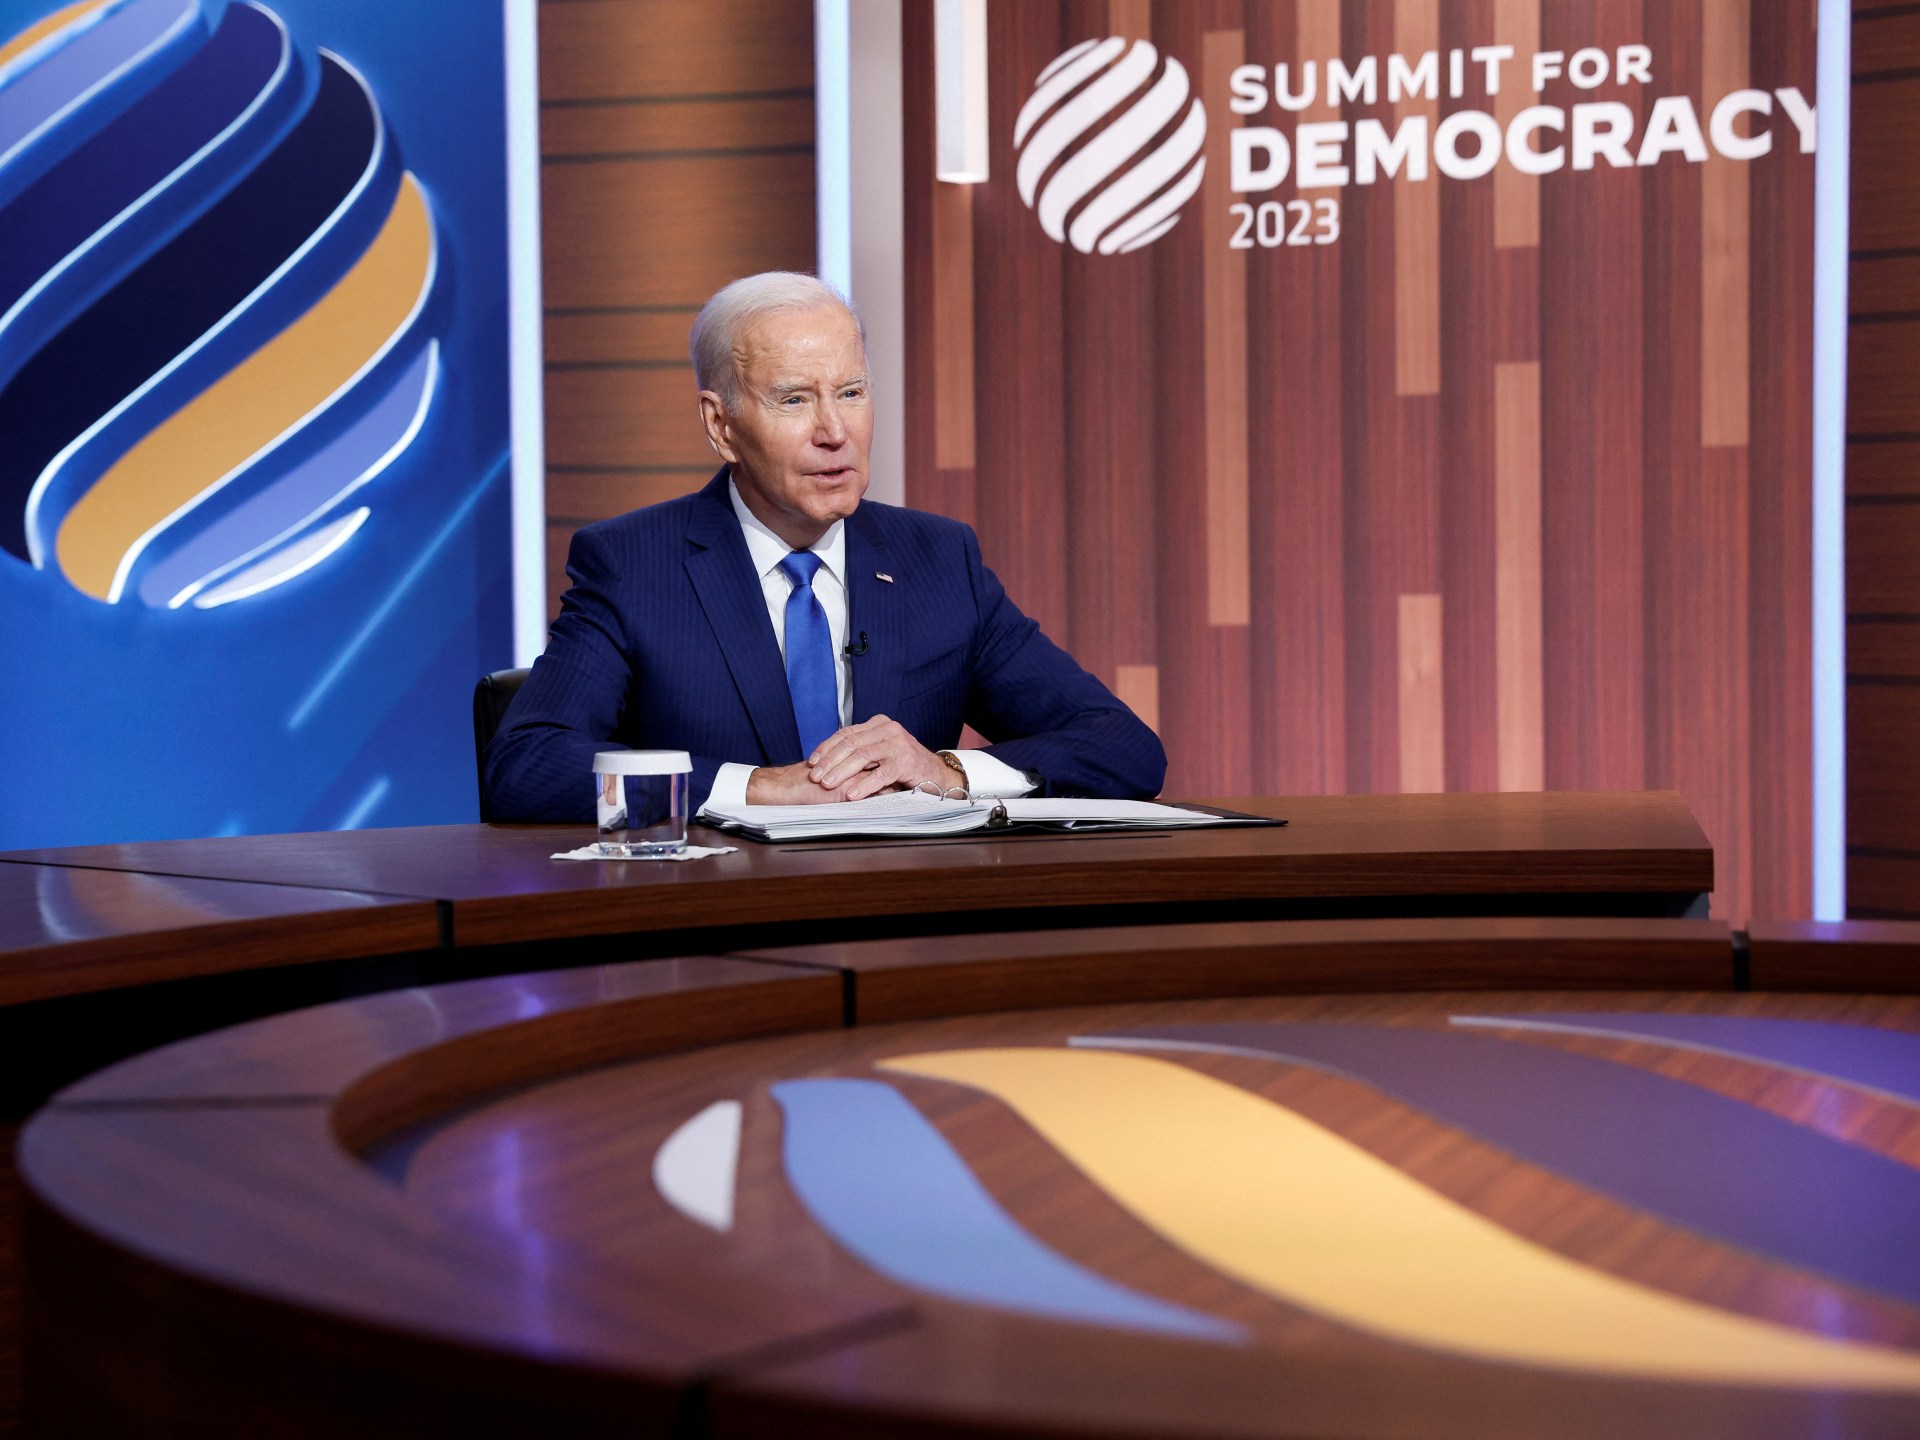 Biden memulai KTT untuk Demokrasi dengan janji pendanaan 0 juta |  Berita Joe Biden